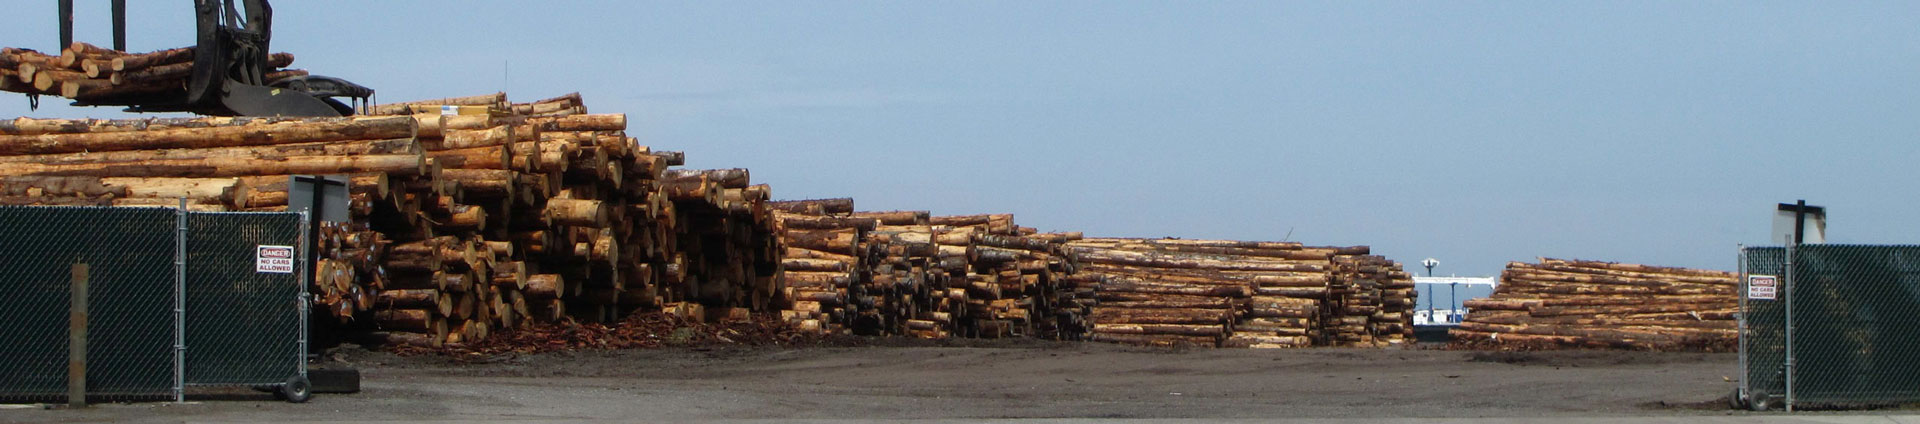 imagen de cabecera para el negocio de la madera